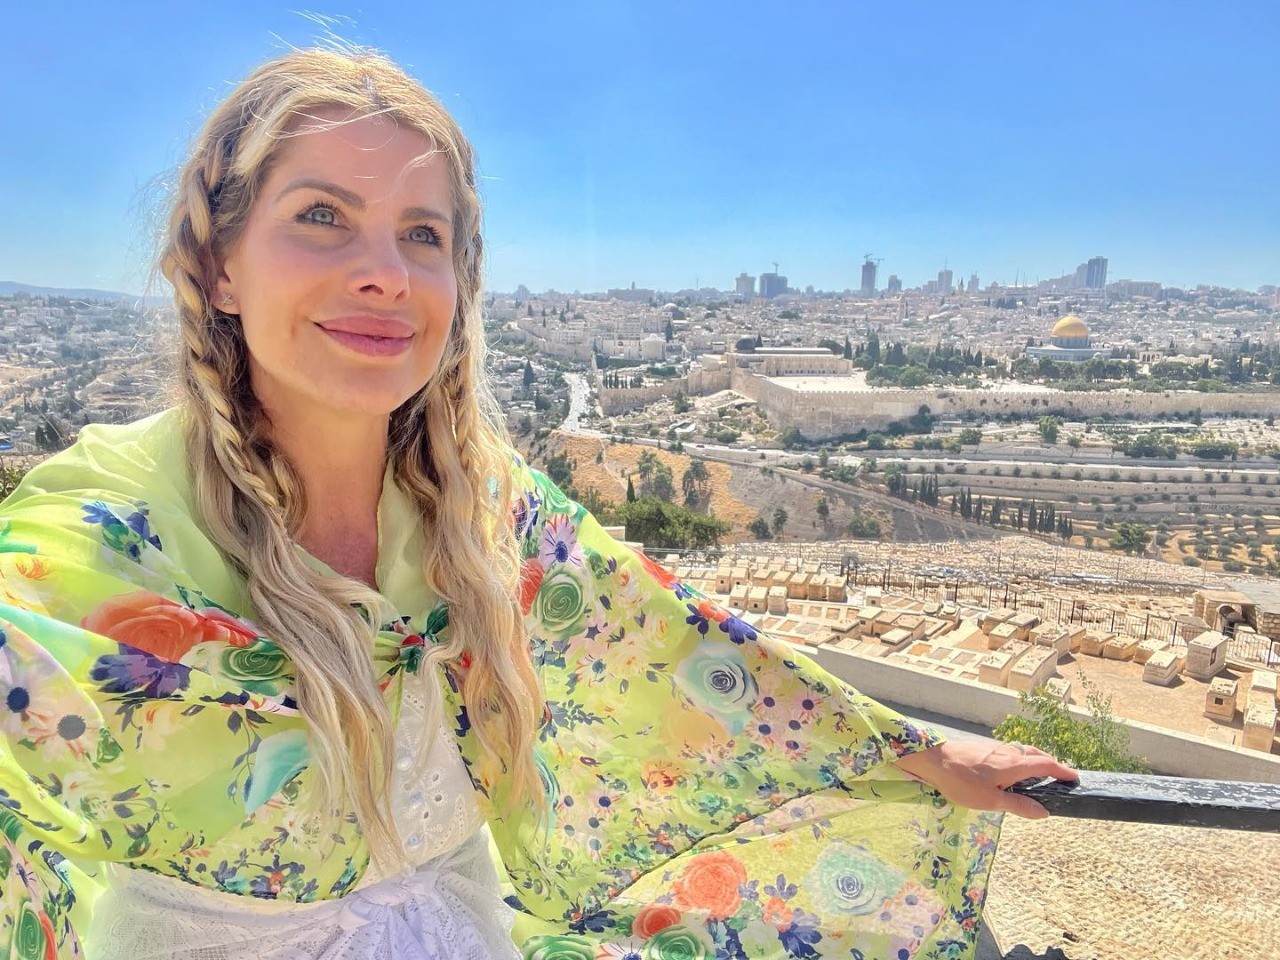 Karina viaja por Israel com sua família (Foto: Reprodução Instagram)